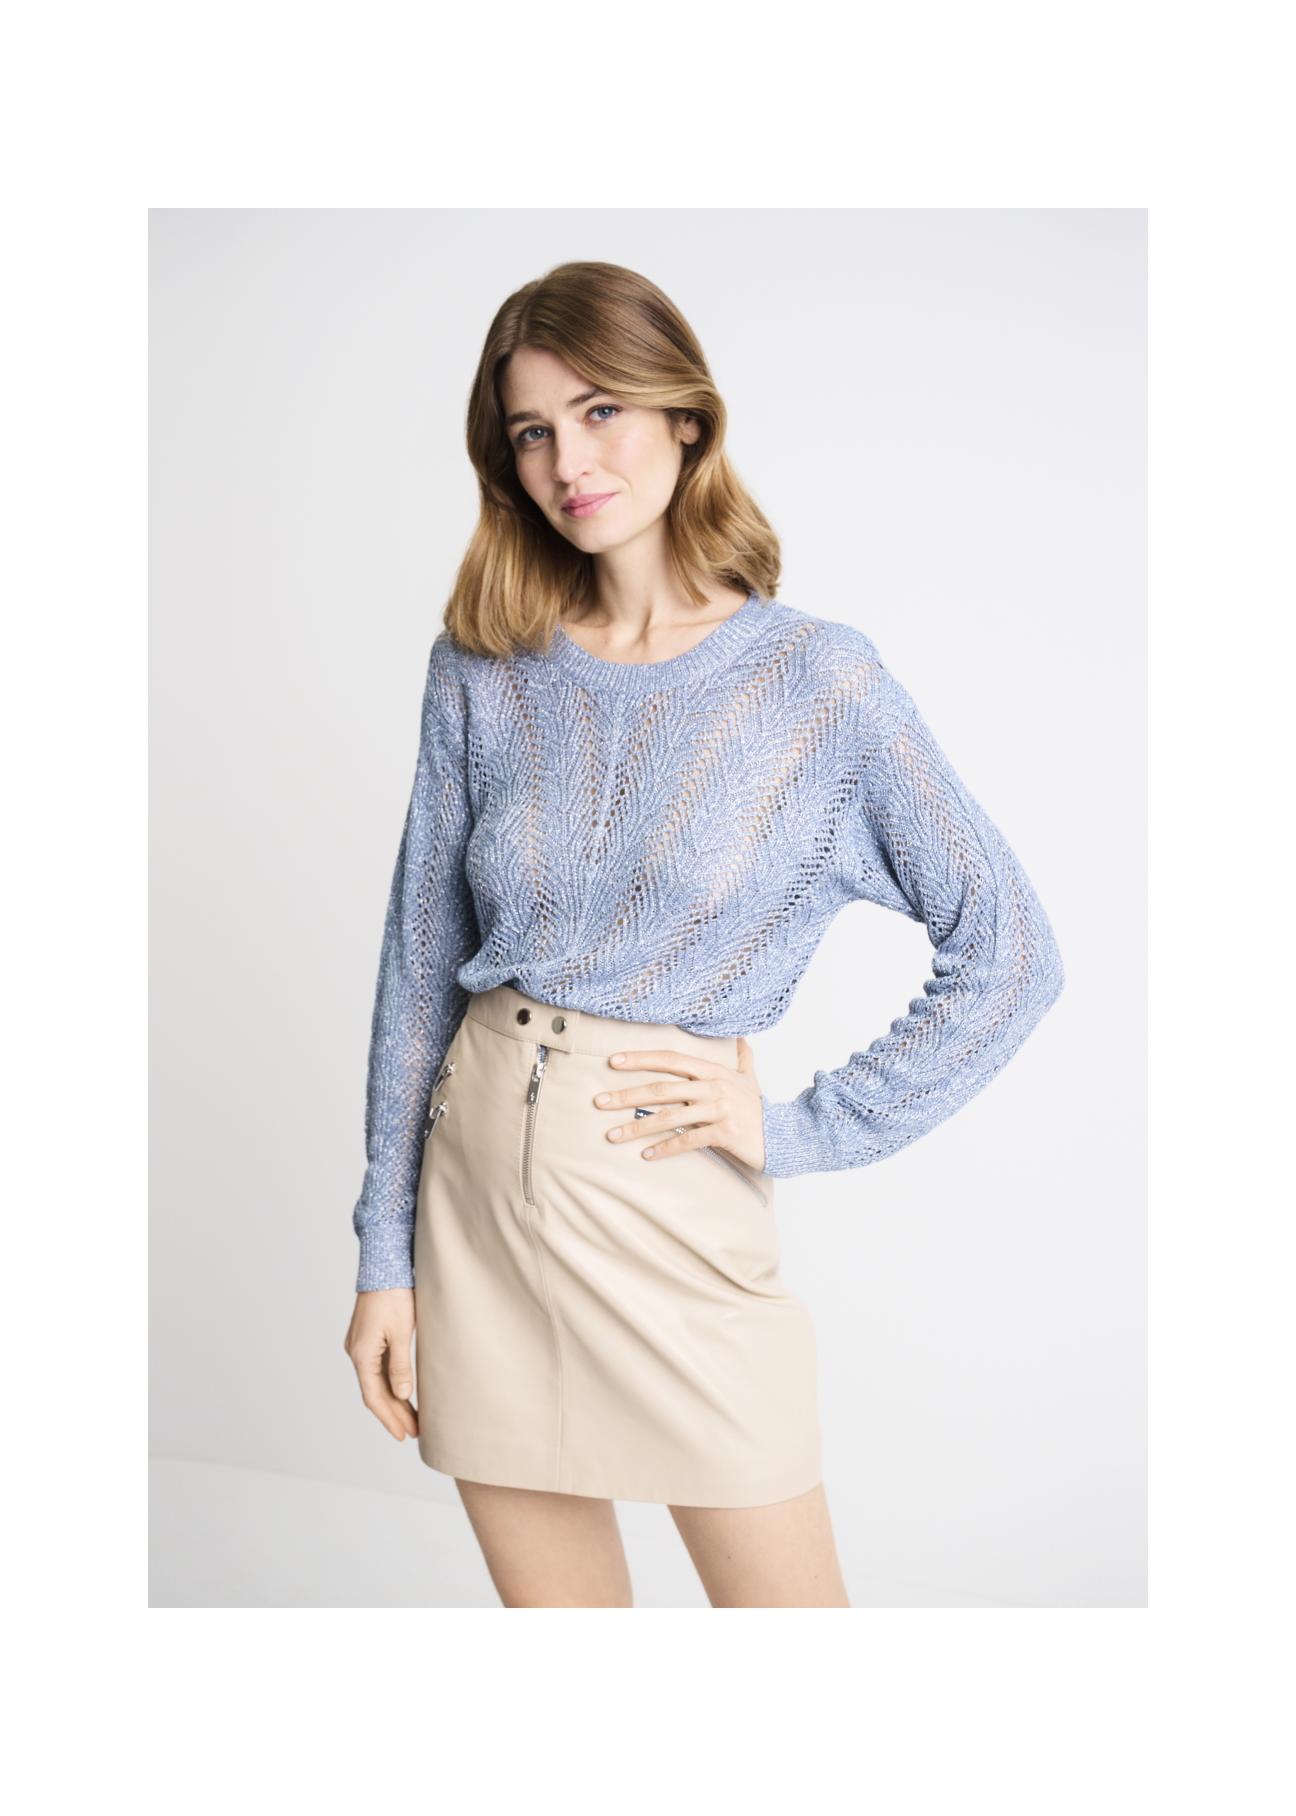 Niebieski ażurowy sweter damski SWEDT-0159-61(W22)